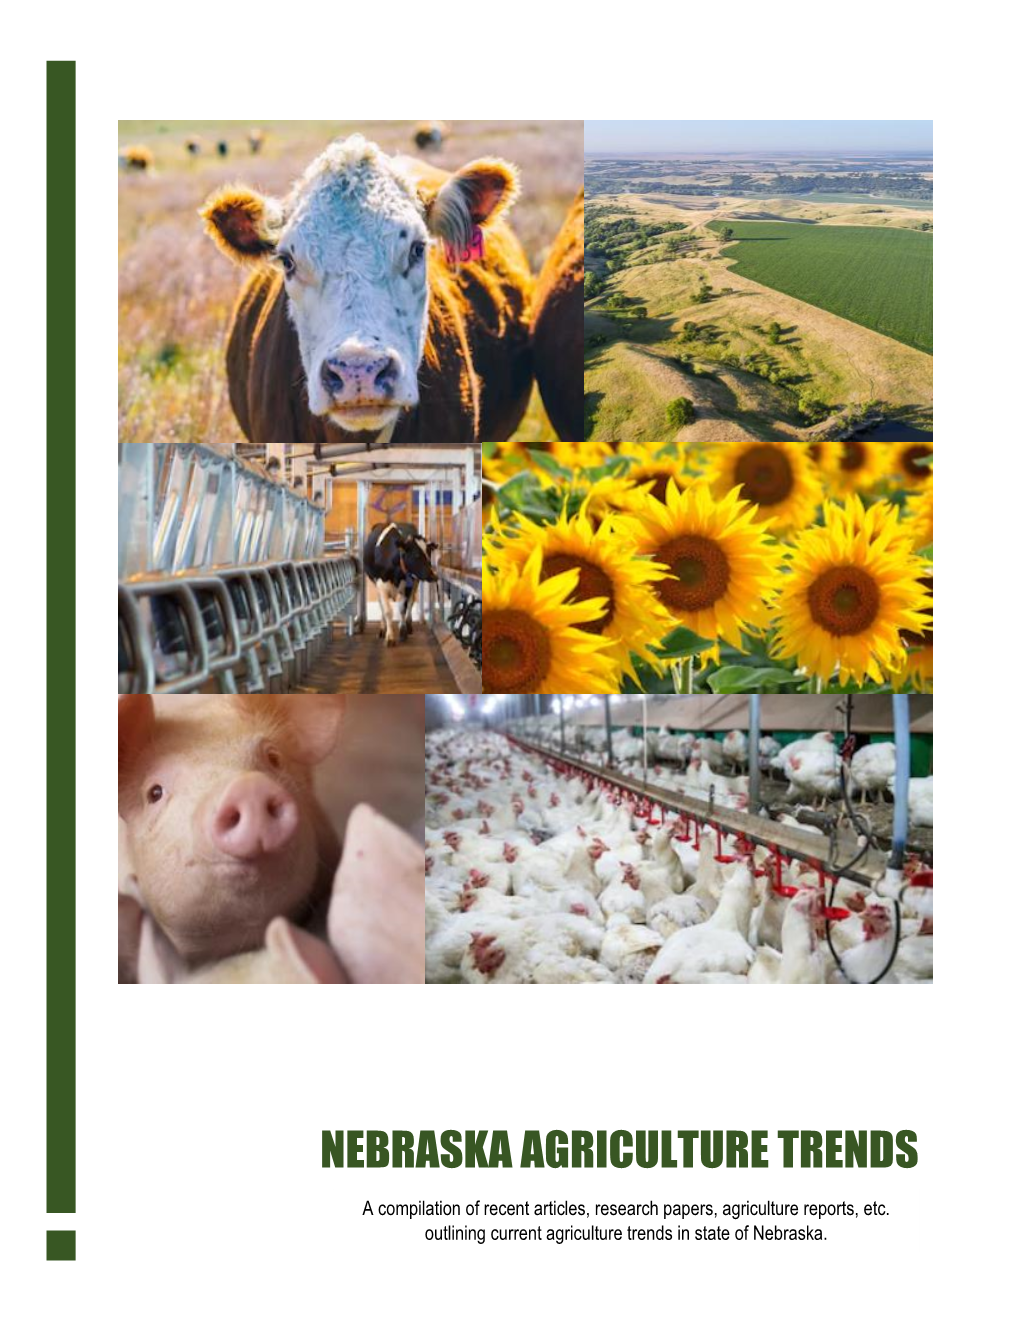 Agricultural Trends in Nebraska